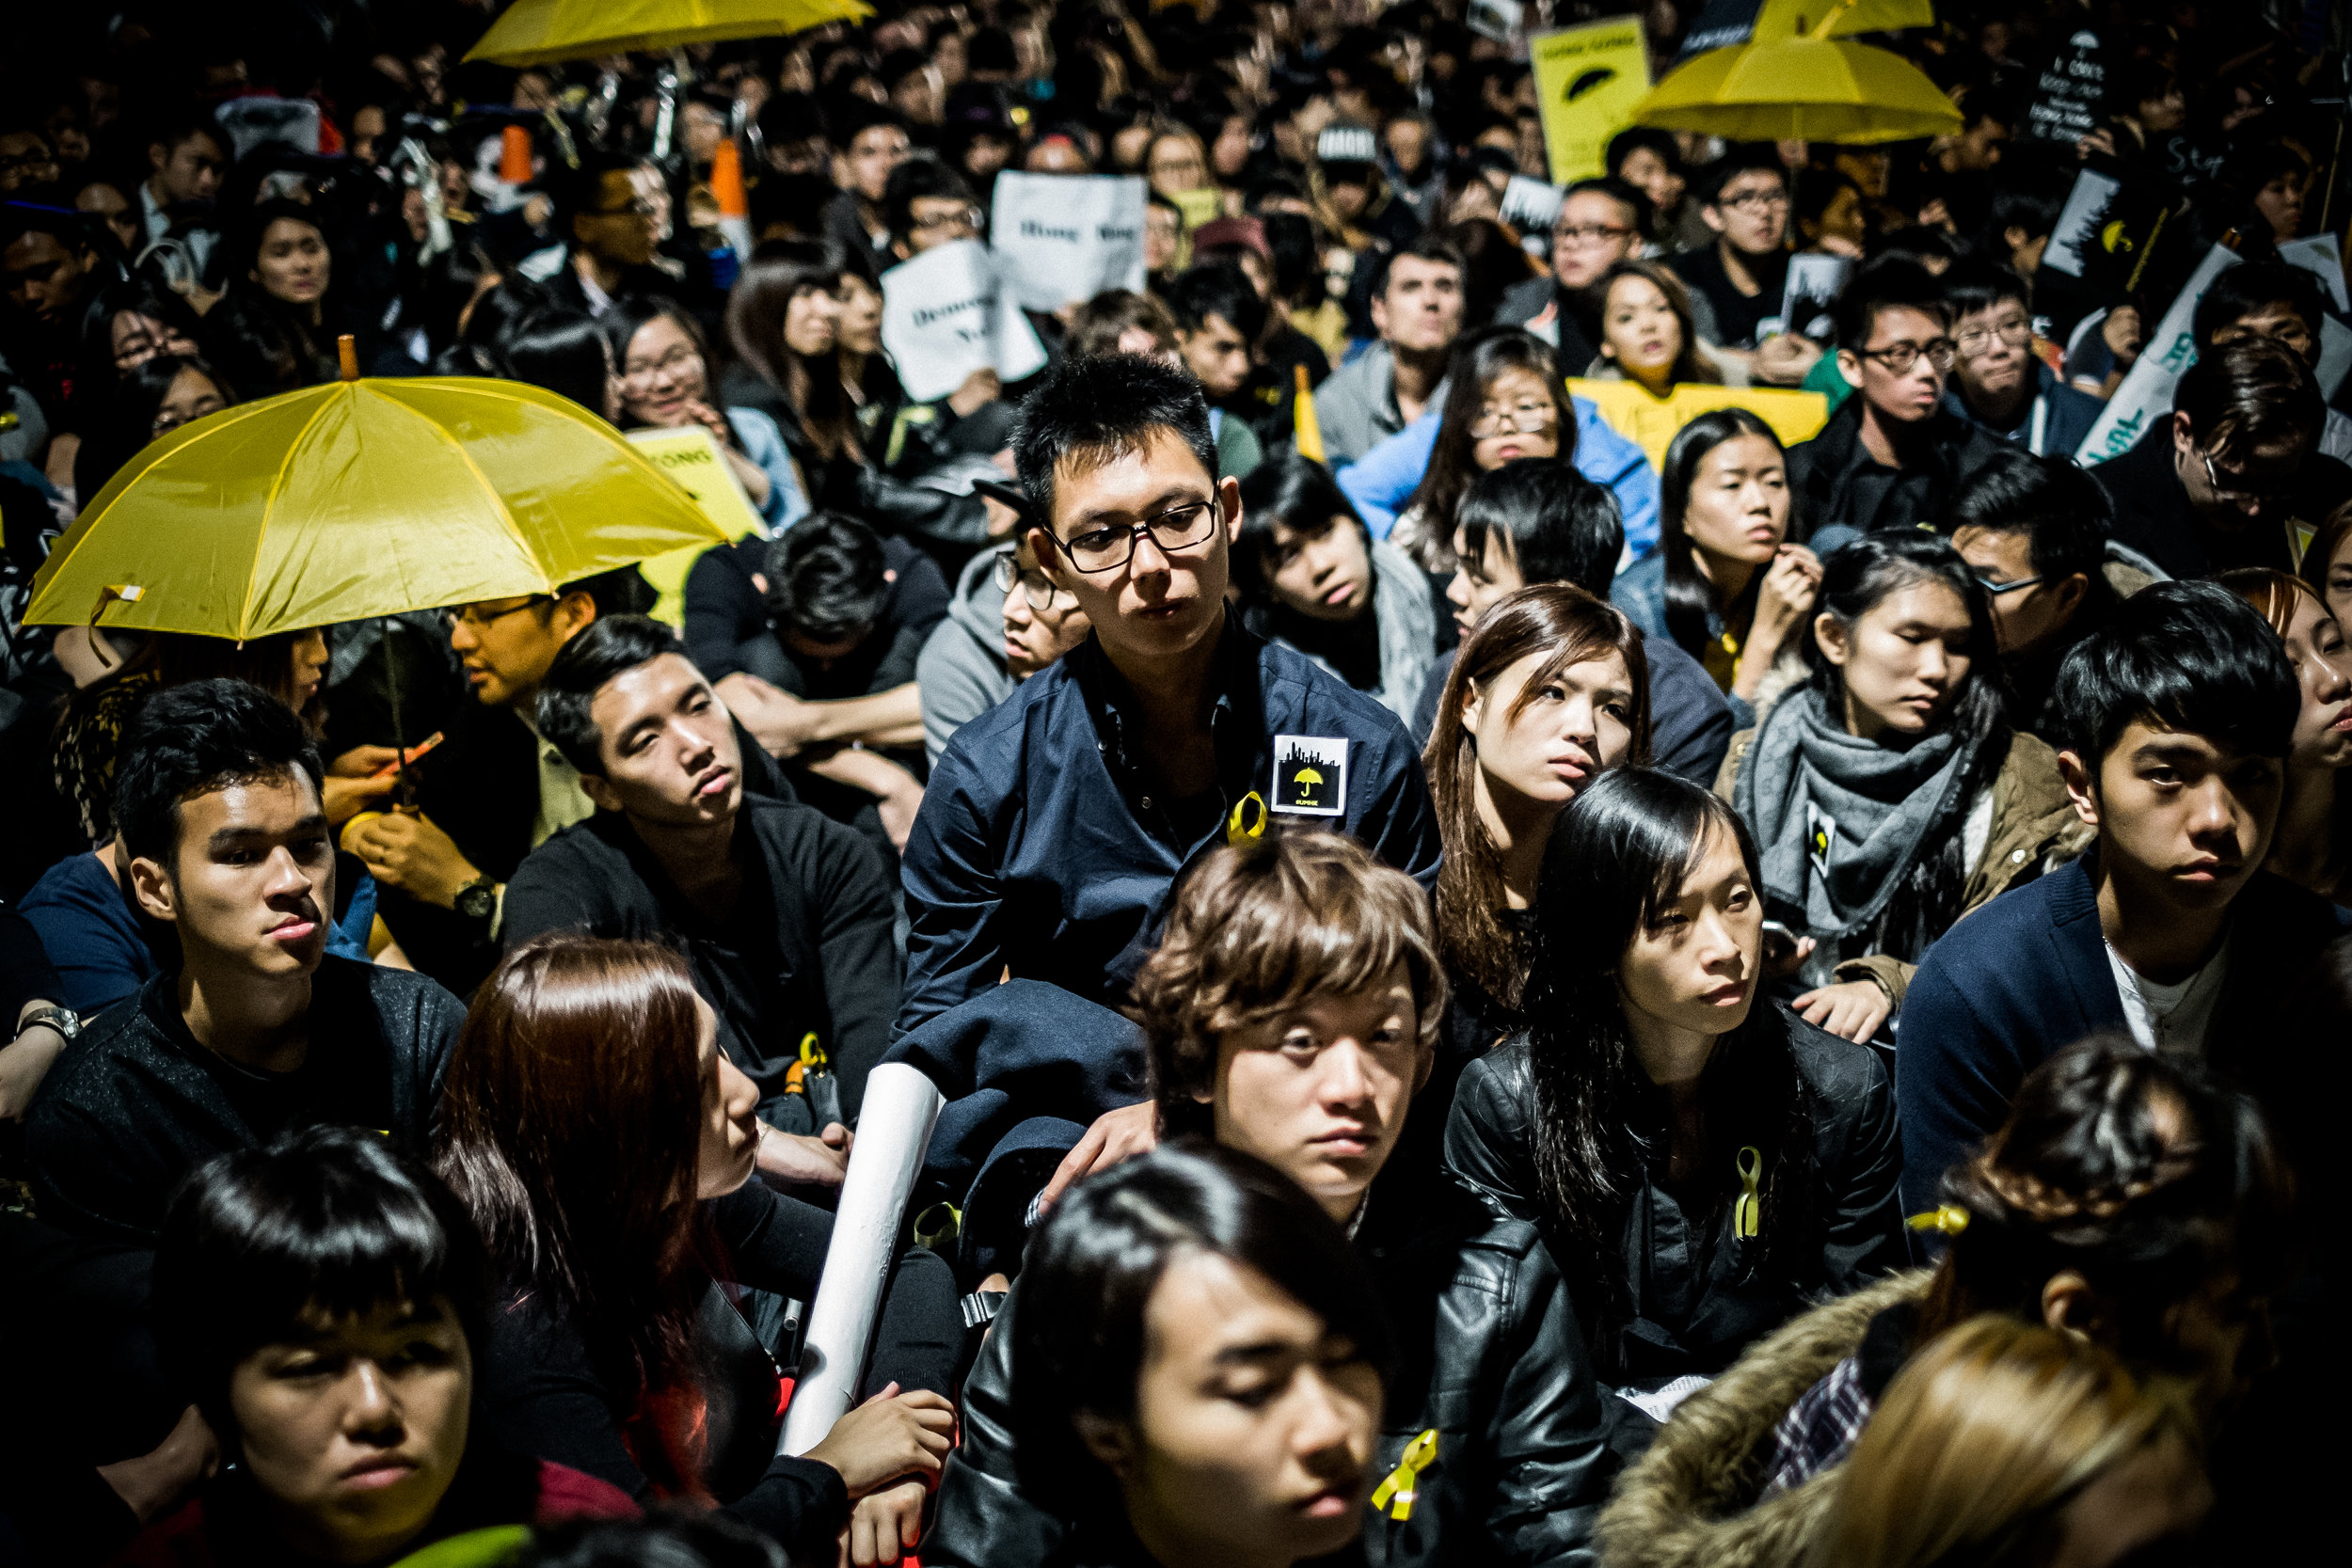 Copy of The Umbrella Movement